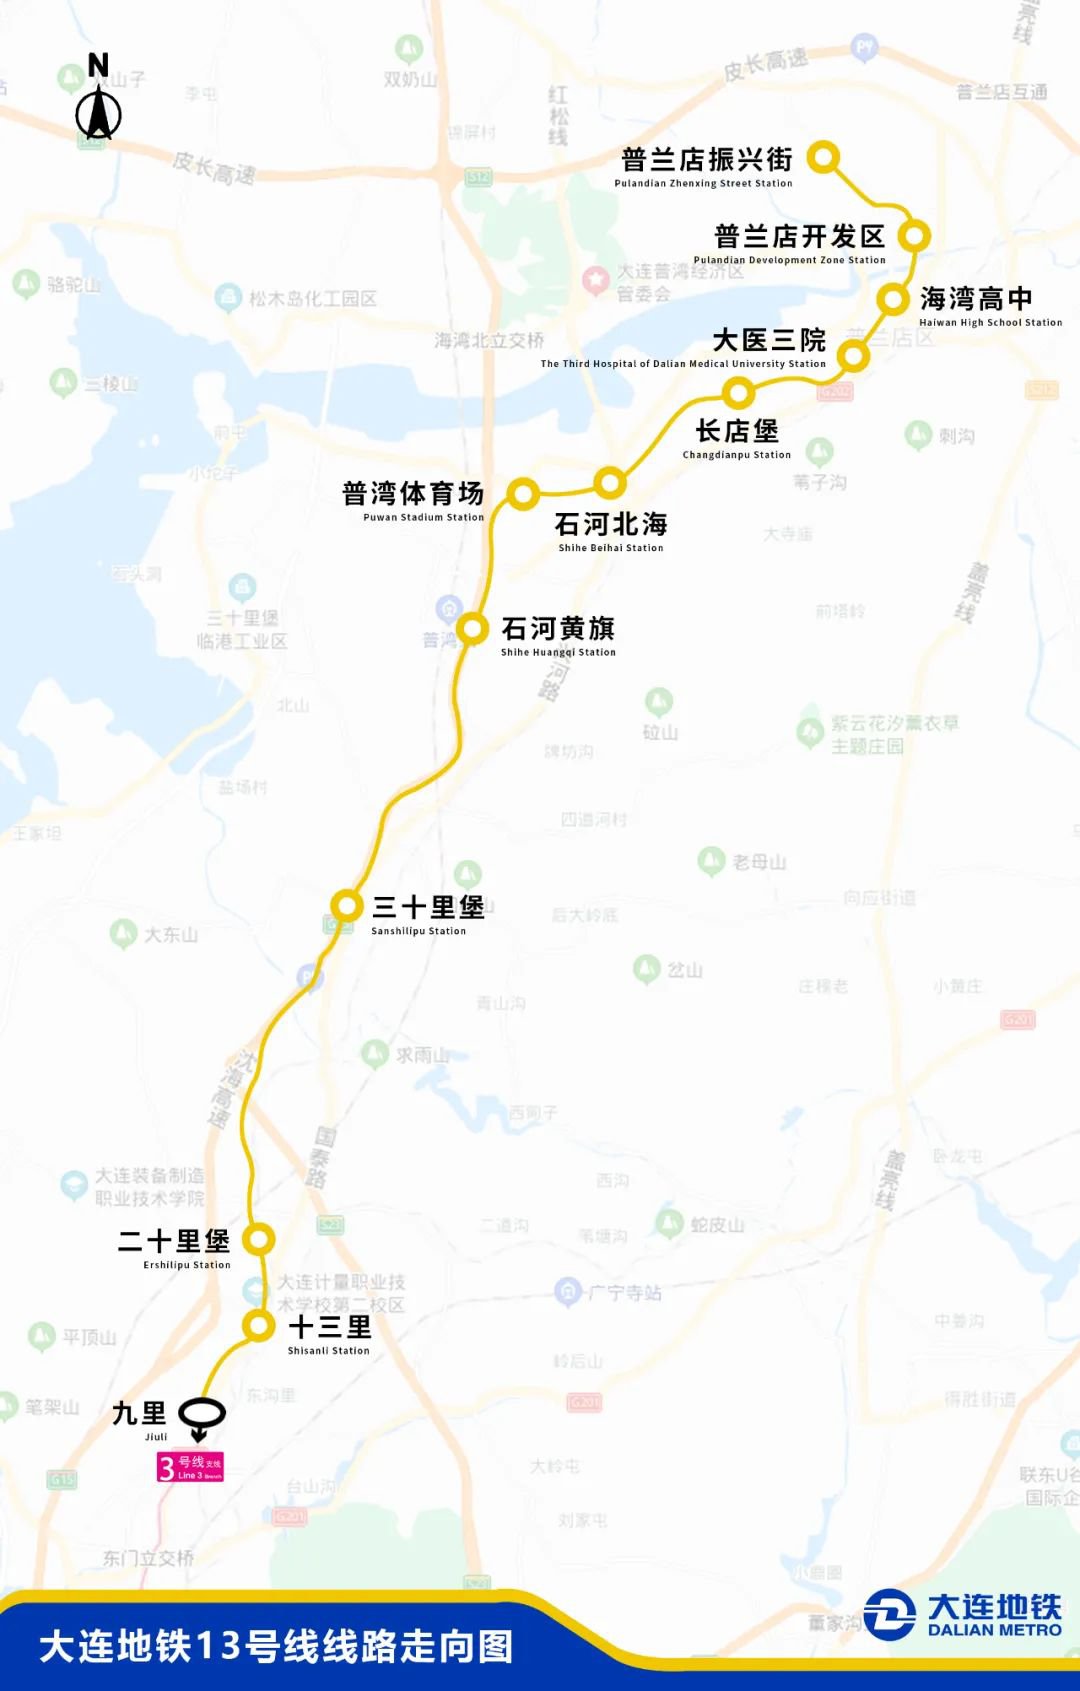 大连地铁13号线二期线路起自大连北站,终至金州九里,全长22公里,其中